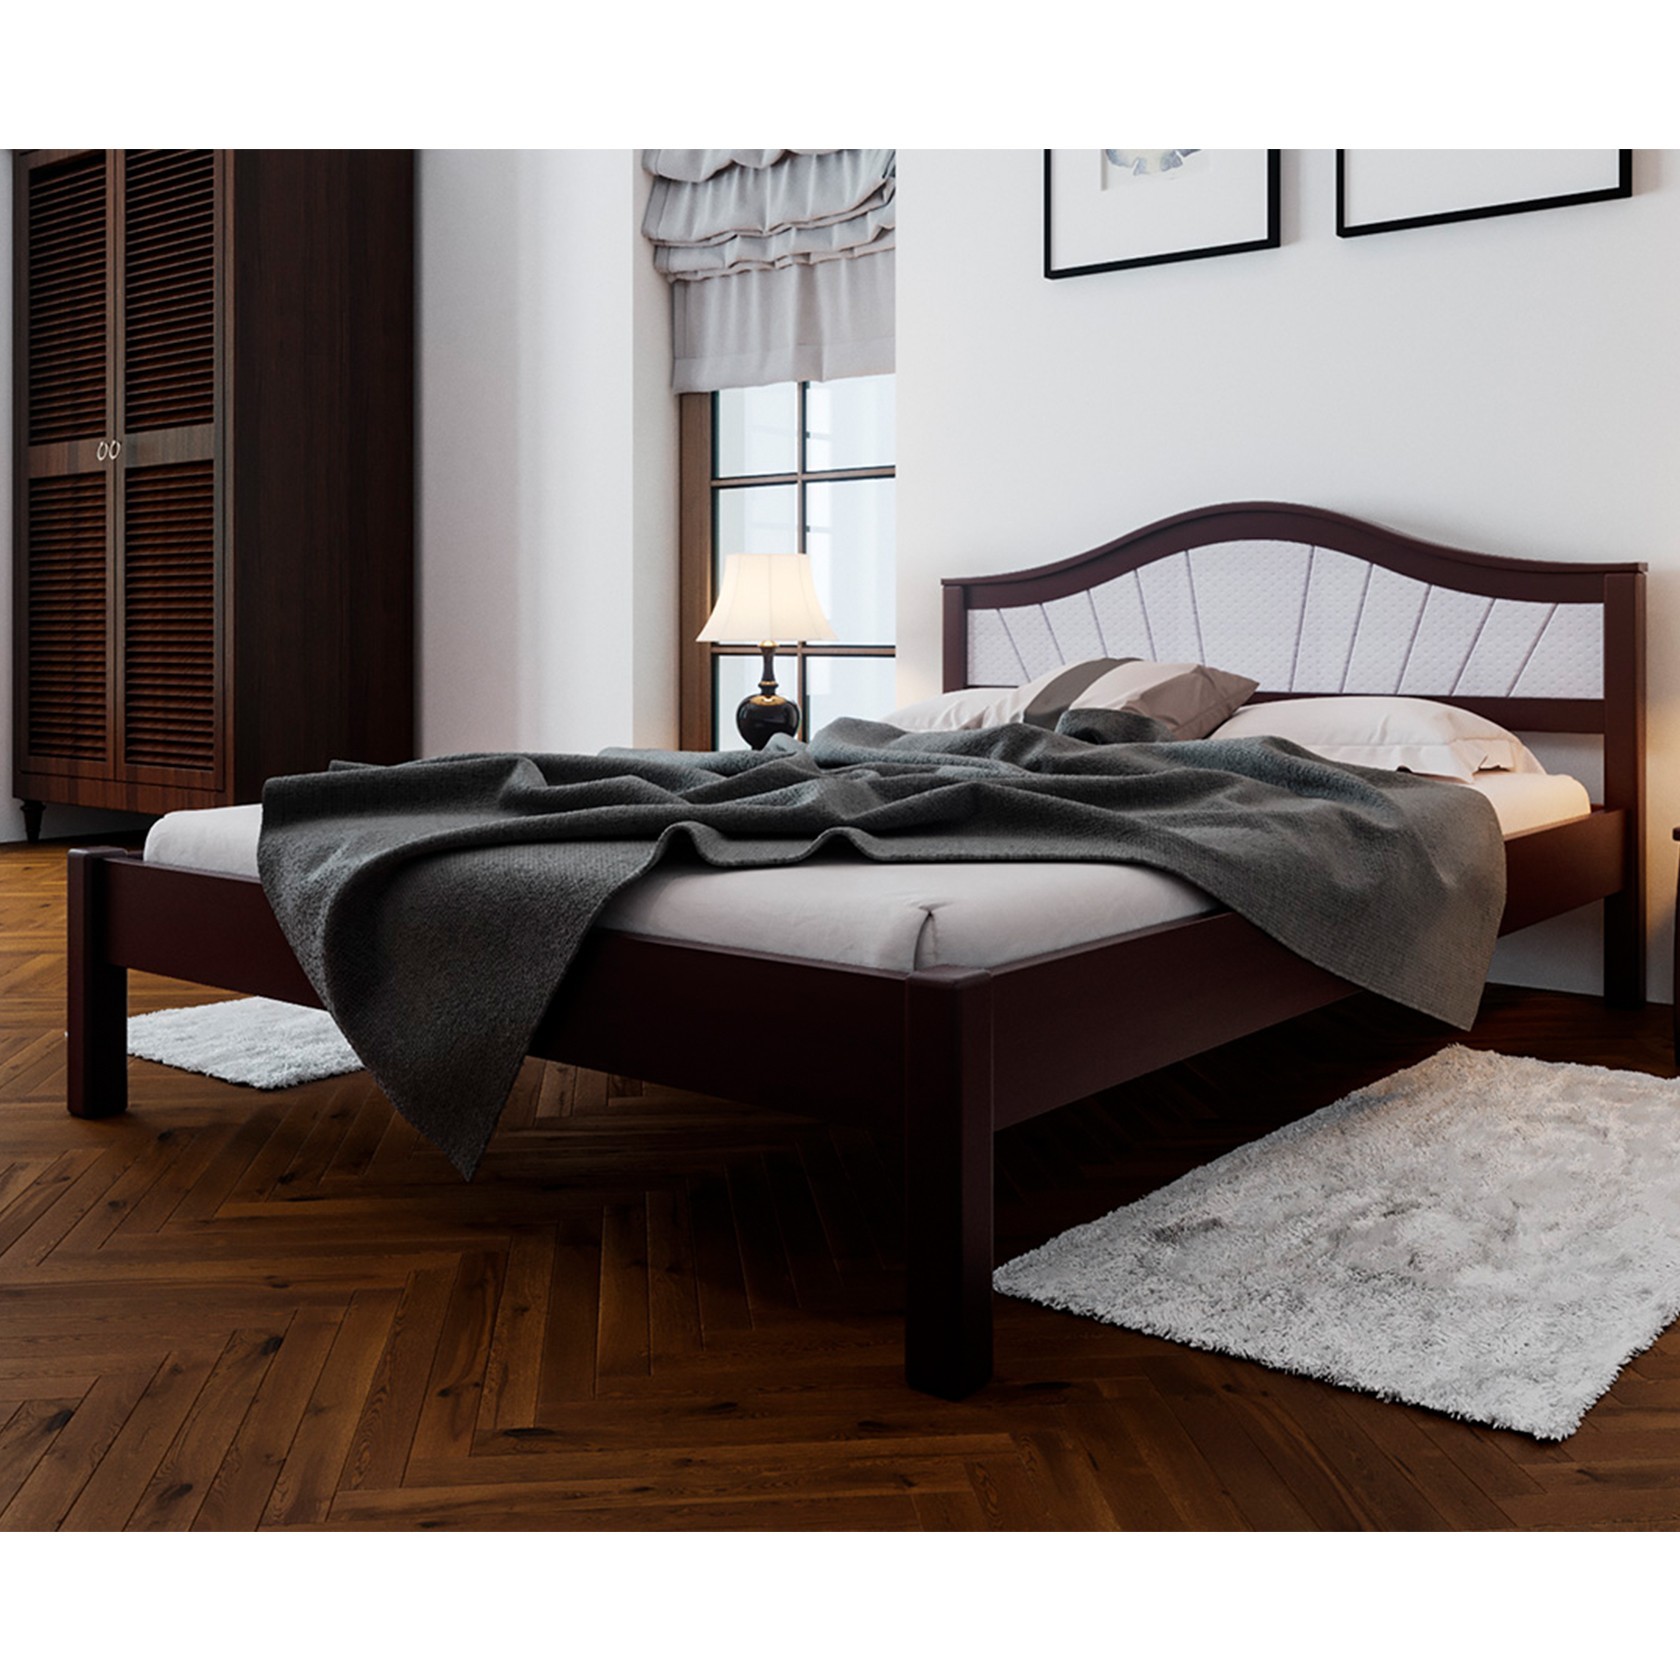 кровать двуспальная из массива дерева с мягким изголовьем